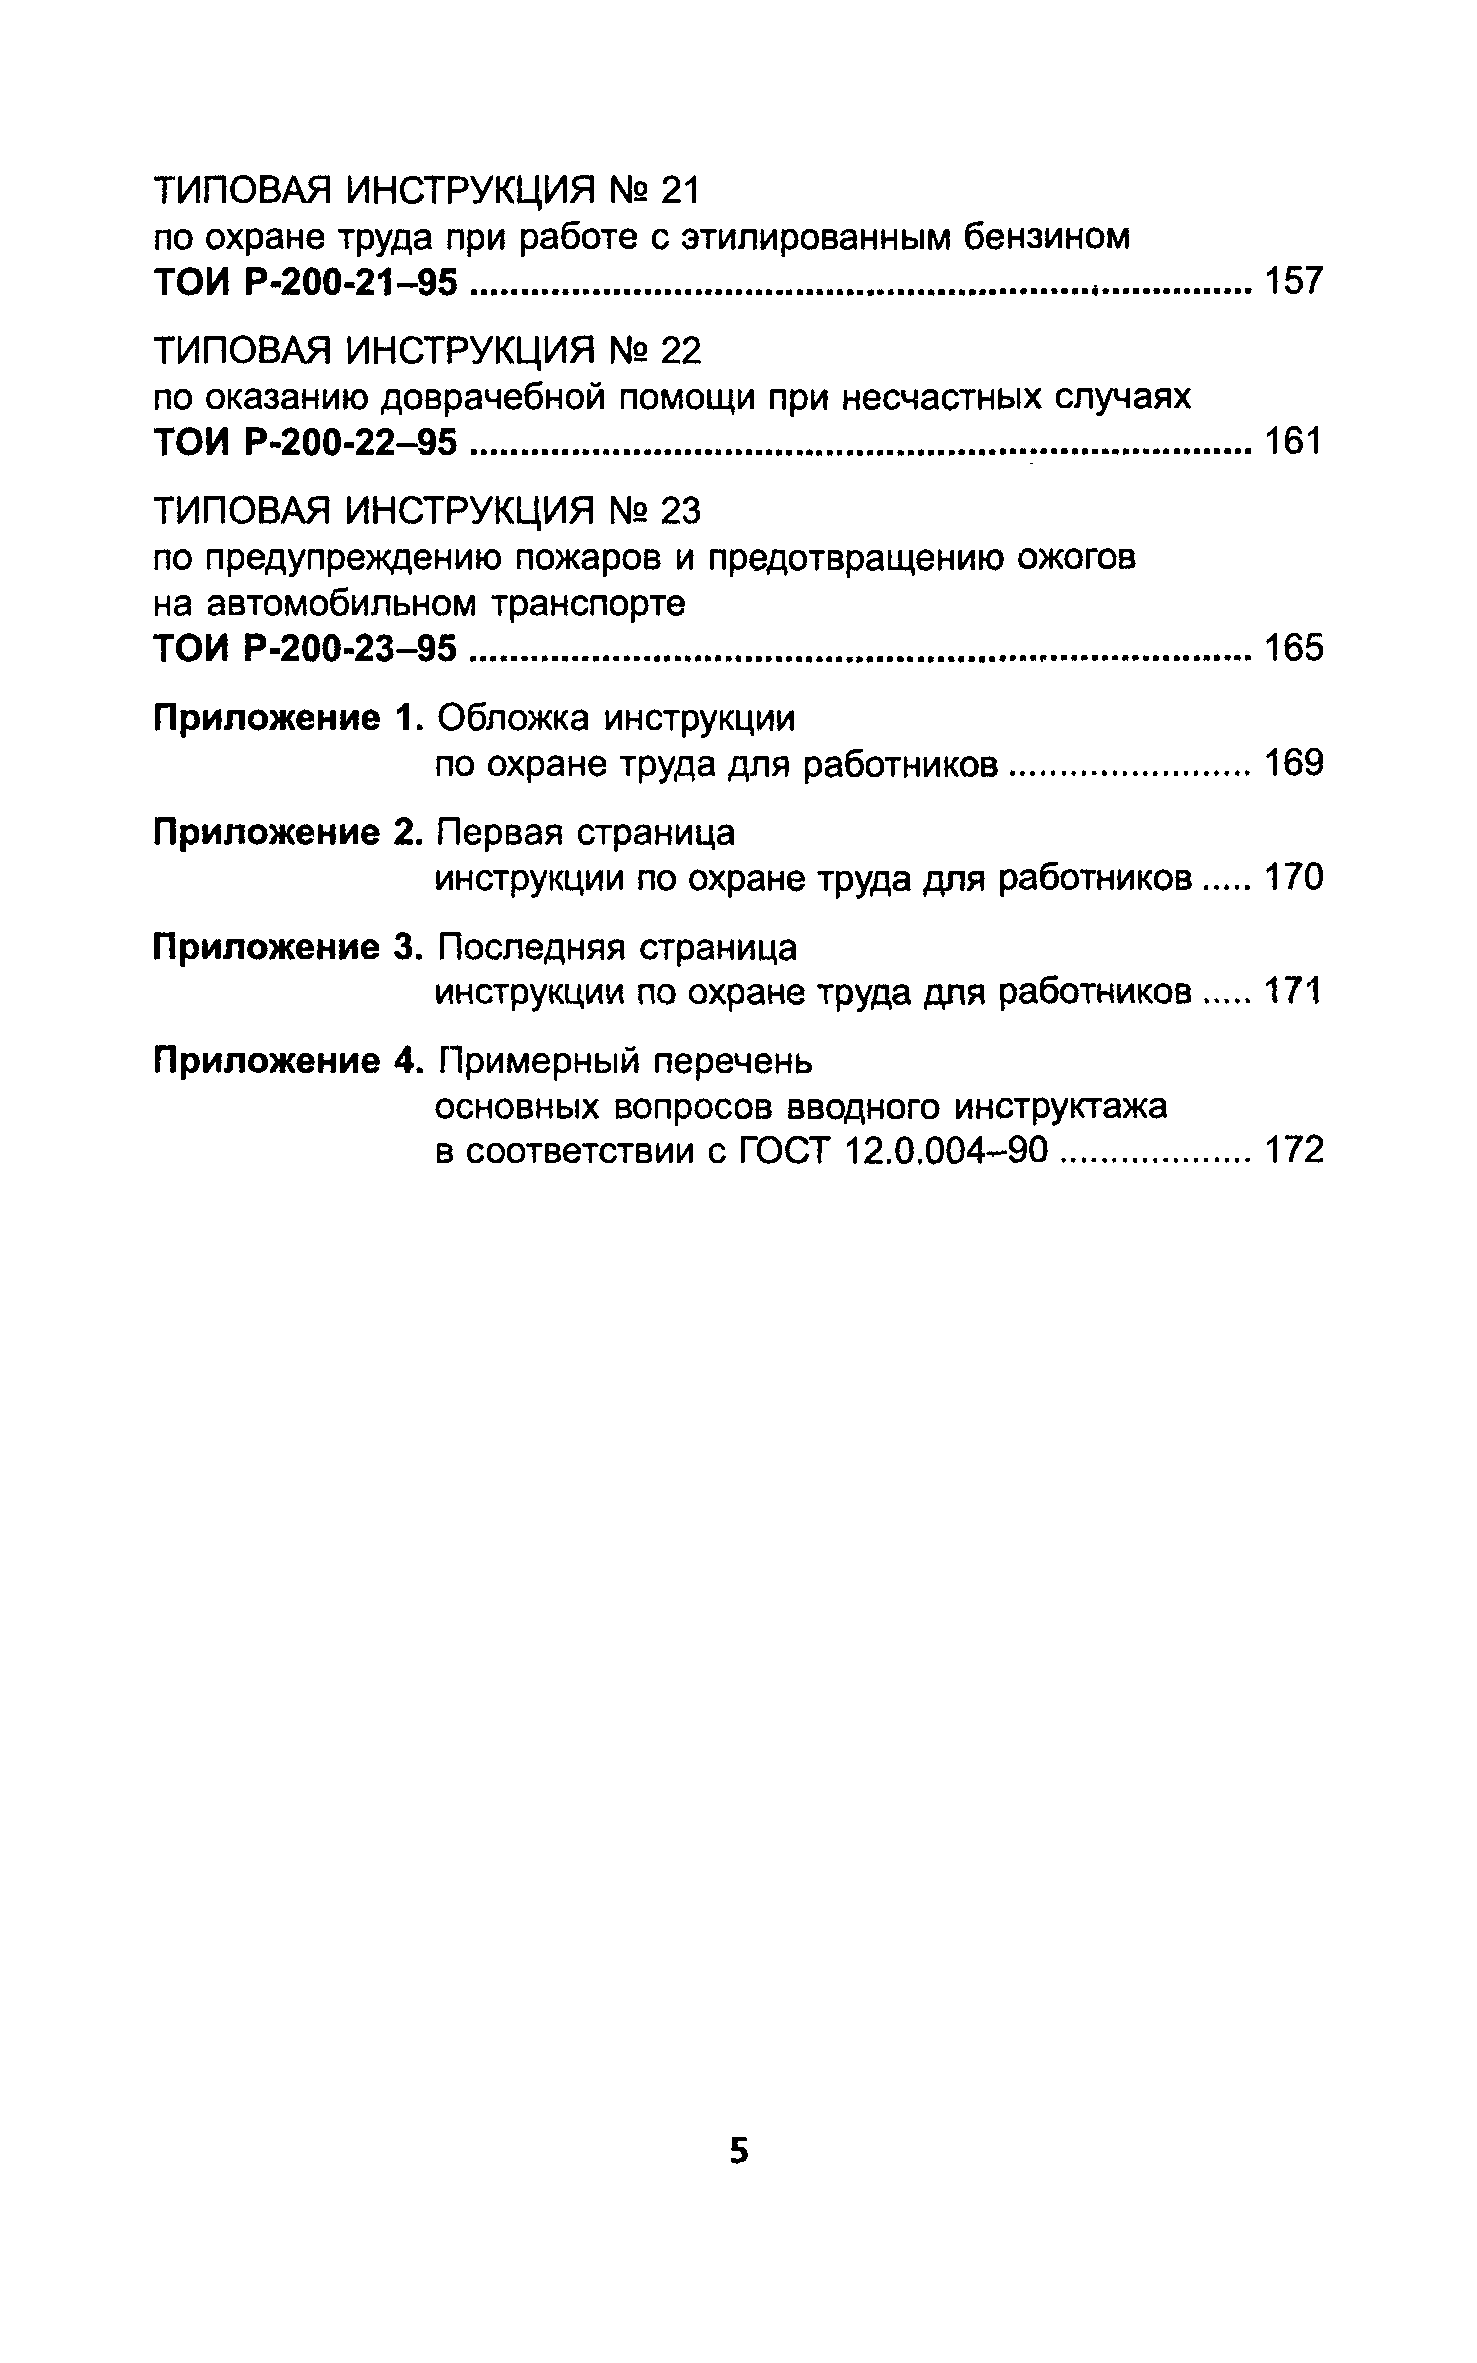 ТОИ Р-200-03-95